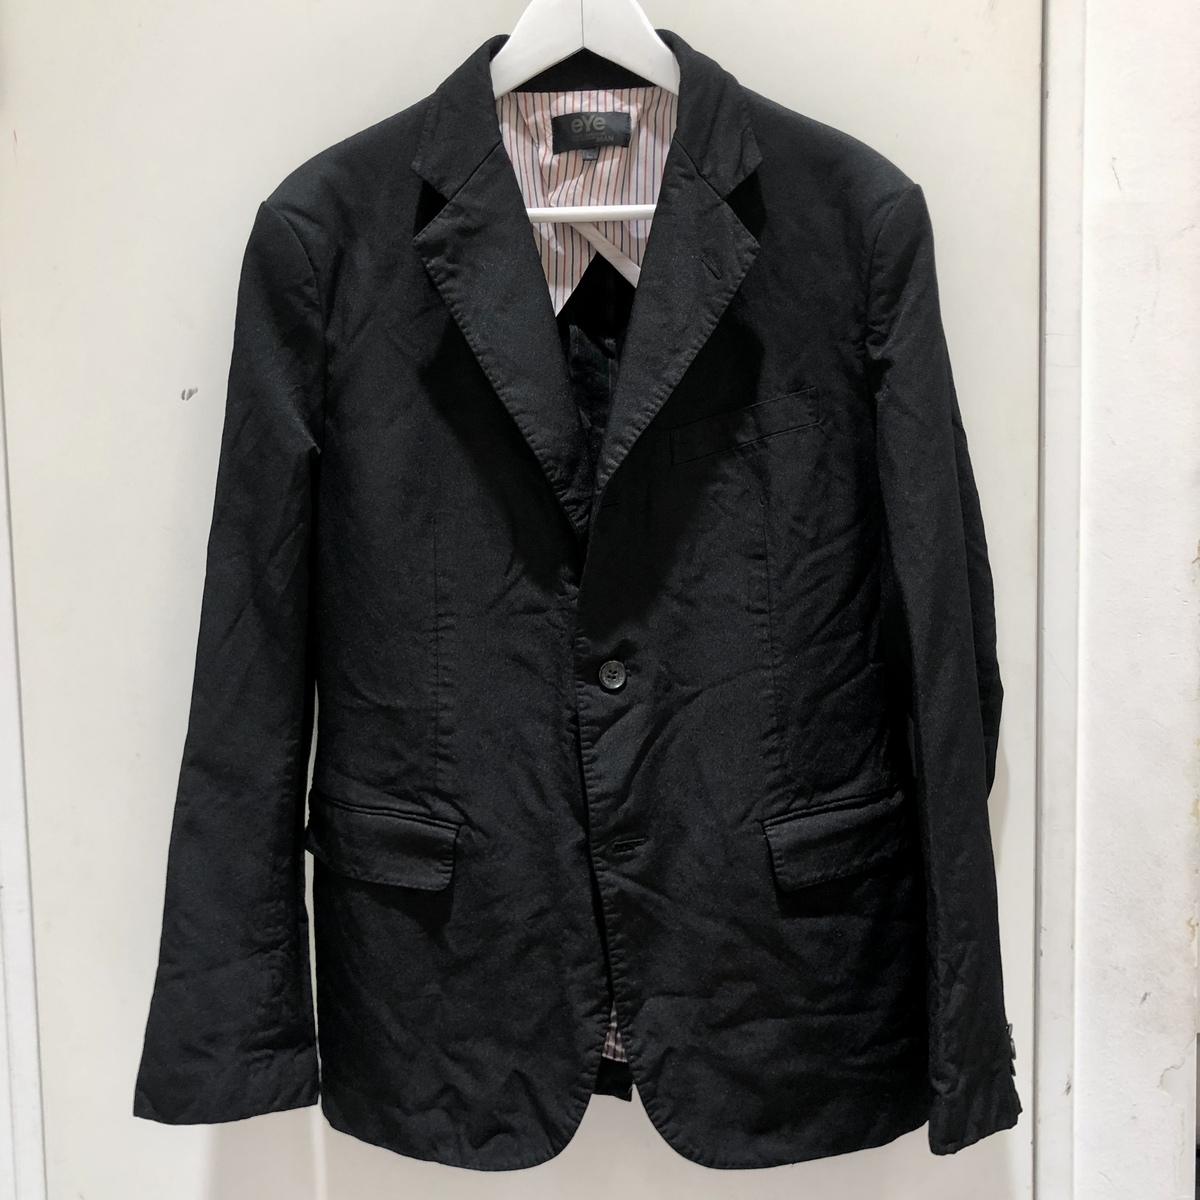 ジュンヤワタナベマンのブラック 2018年春夏 縮絨ジャケットの買取実績です。